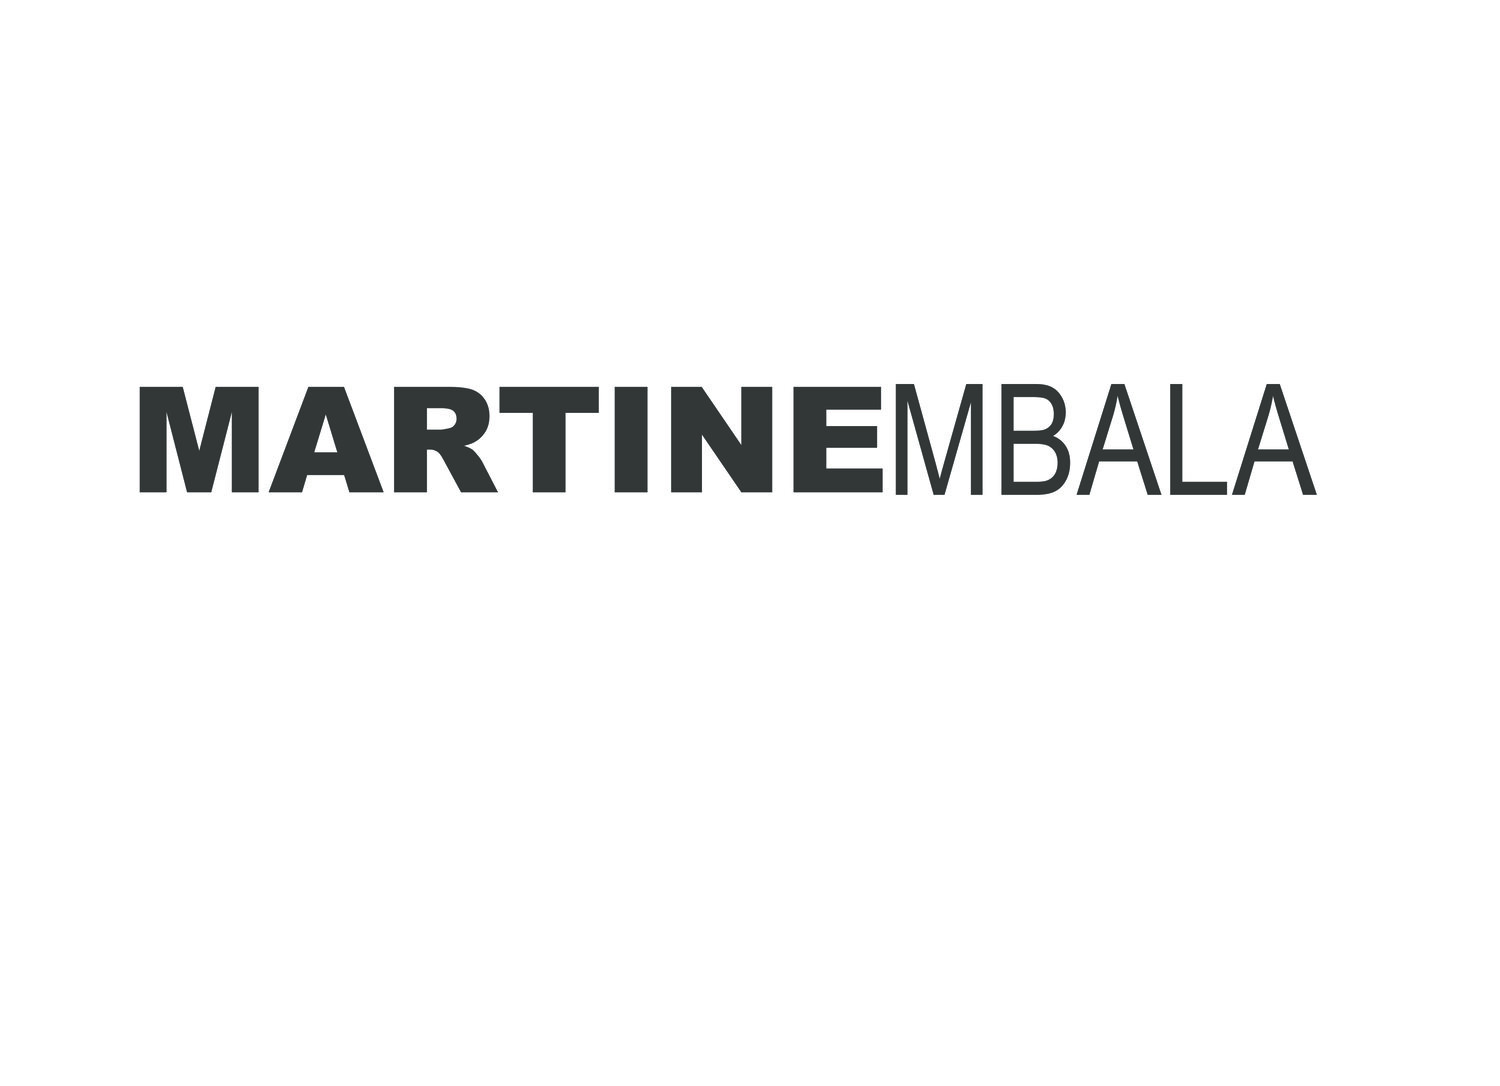 Martine Mbala